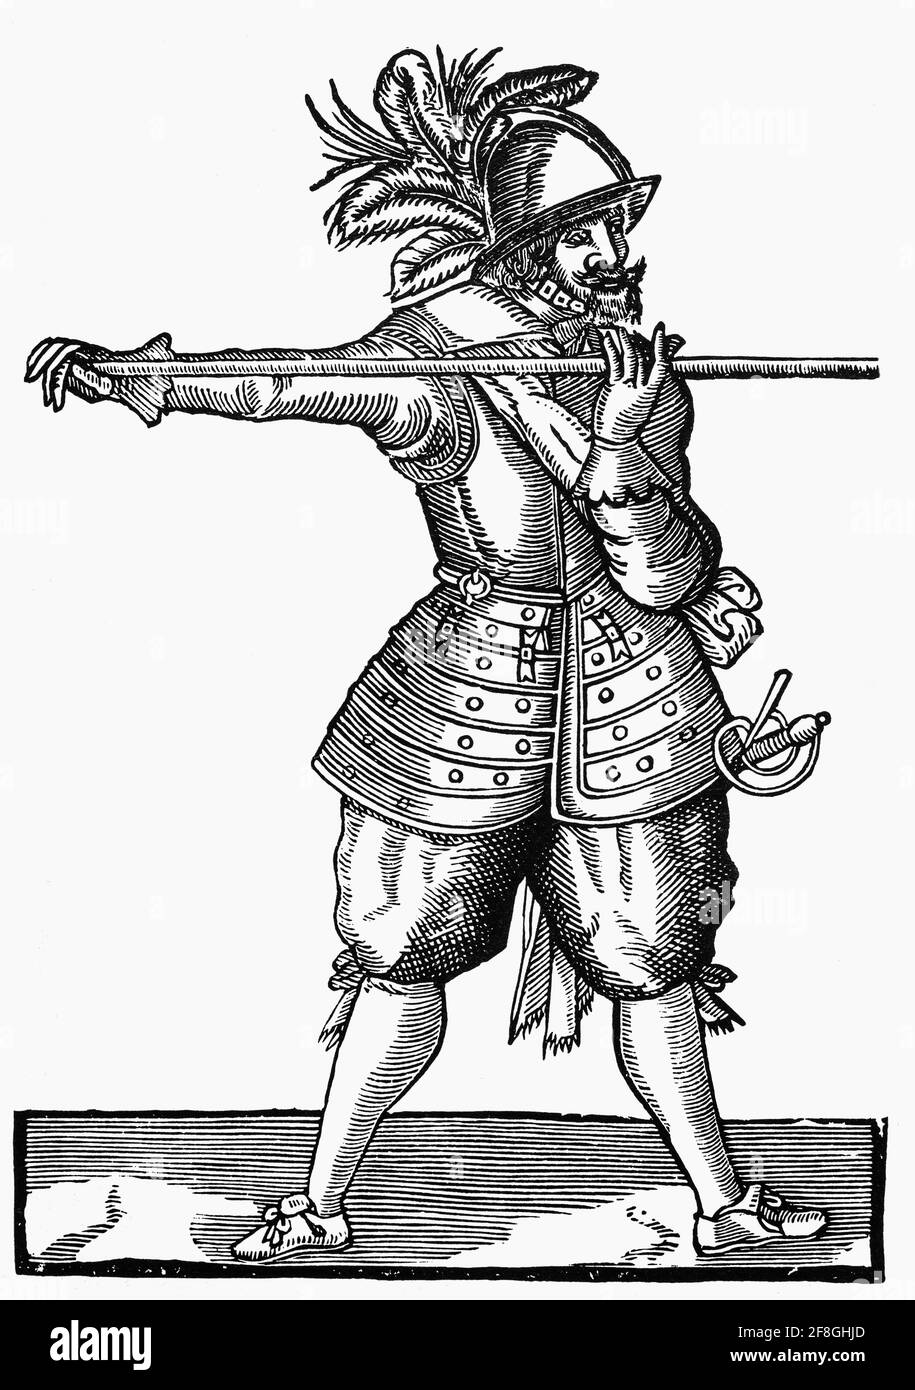 Ein Hecht aus dem 17. Jahrhundert im Kleid von Cromwells New Model Army. Trotz der Einführung von Musketen spielte der Hecht eine wichtige Rolle beim Schutz der Musketiere vor Kavallerieeinheiten. Der Hecht ist im Grunde ein sehr langer, stanziger Speer, der früher vom späten Mittelalter bis zum frühen 18. Jahrhundert von der Infanterie ausgiebig eingesetzt wurde und von Fußsoldaten aus nächster Nähe eingesetzt wurde. Sie wurden schließlich durch Gewehre ersetzt, die eine größere Reichweite hatten und an denen ein Bajonett befestigt werden konnte. Stockfoto